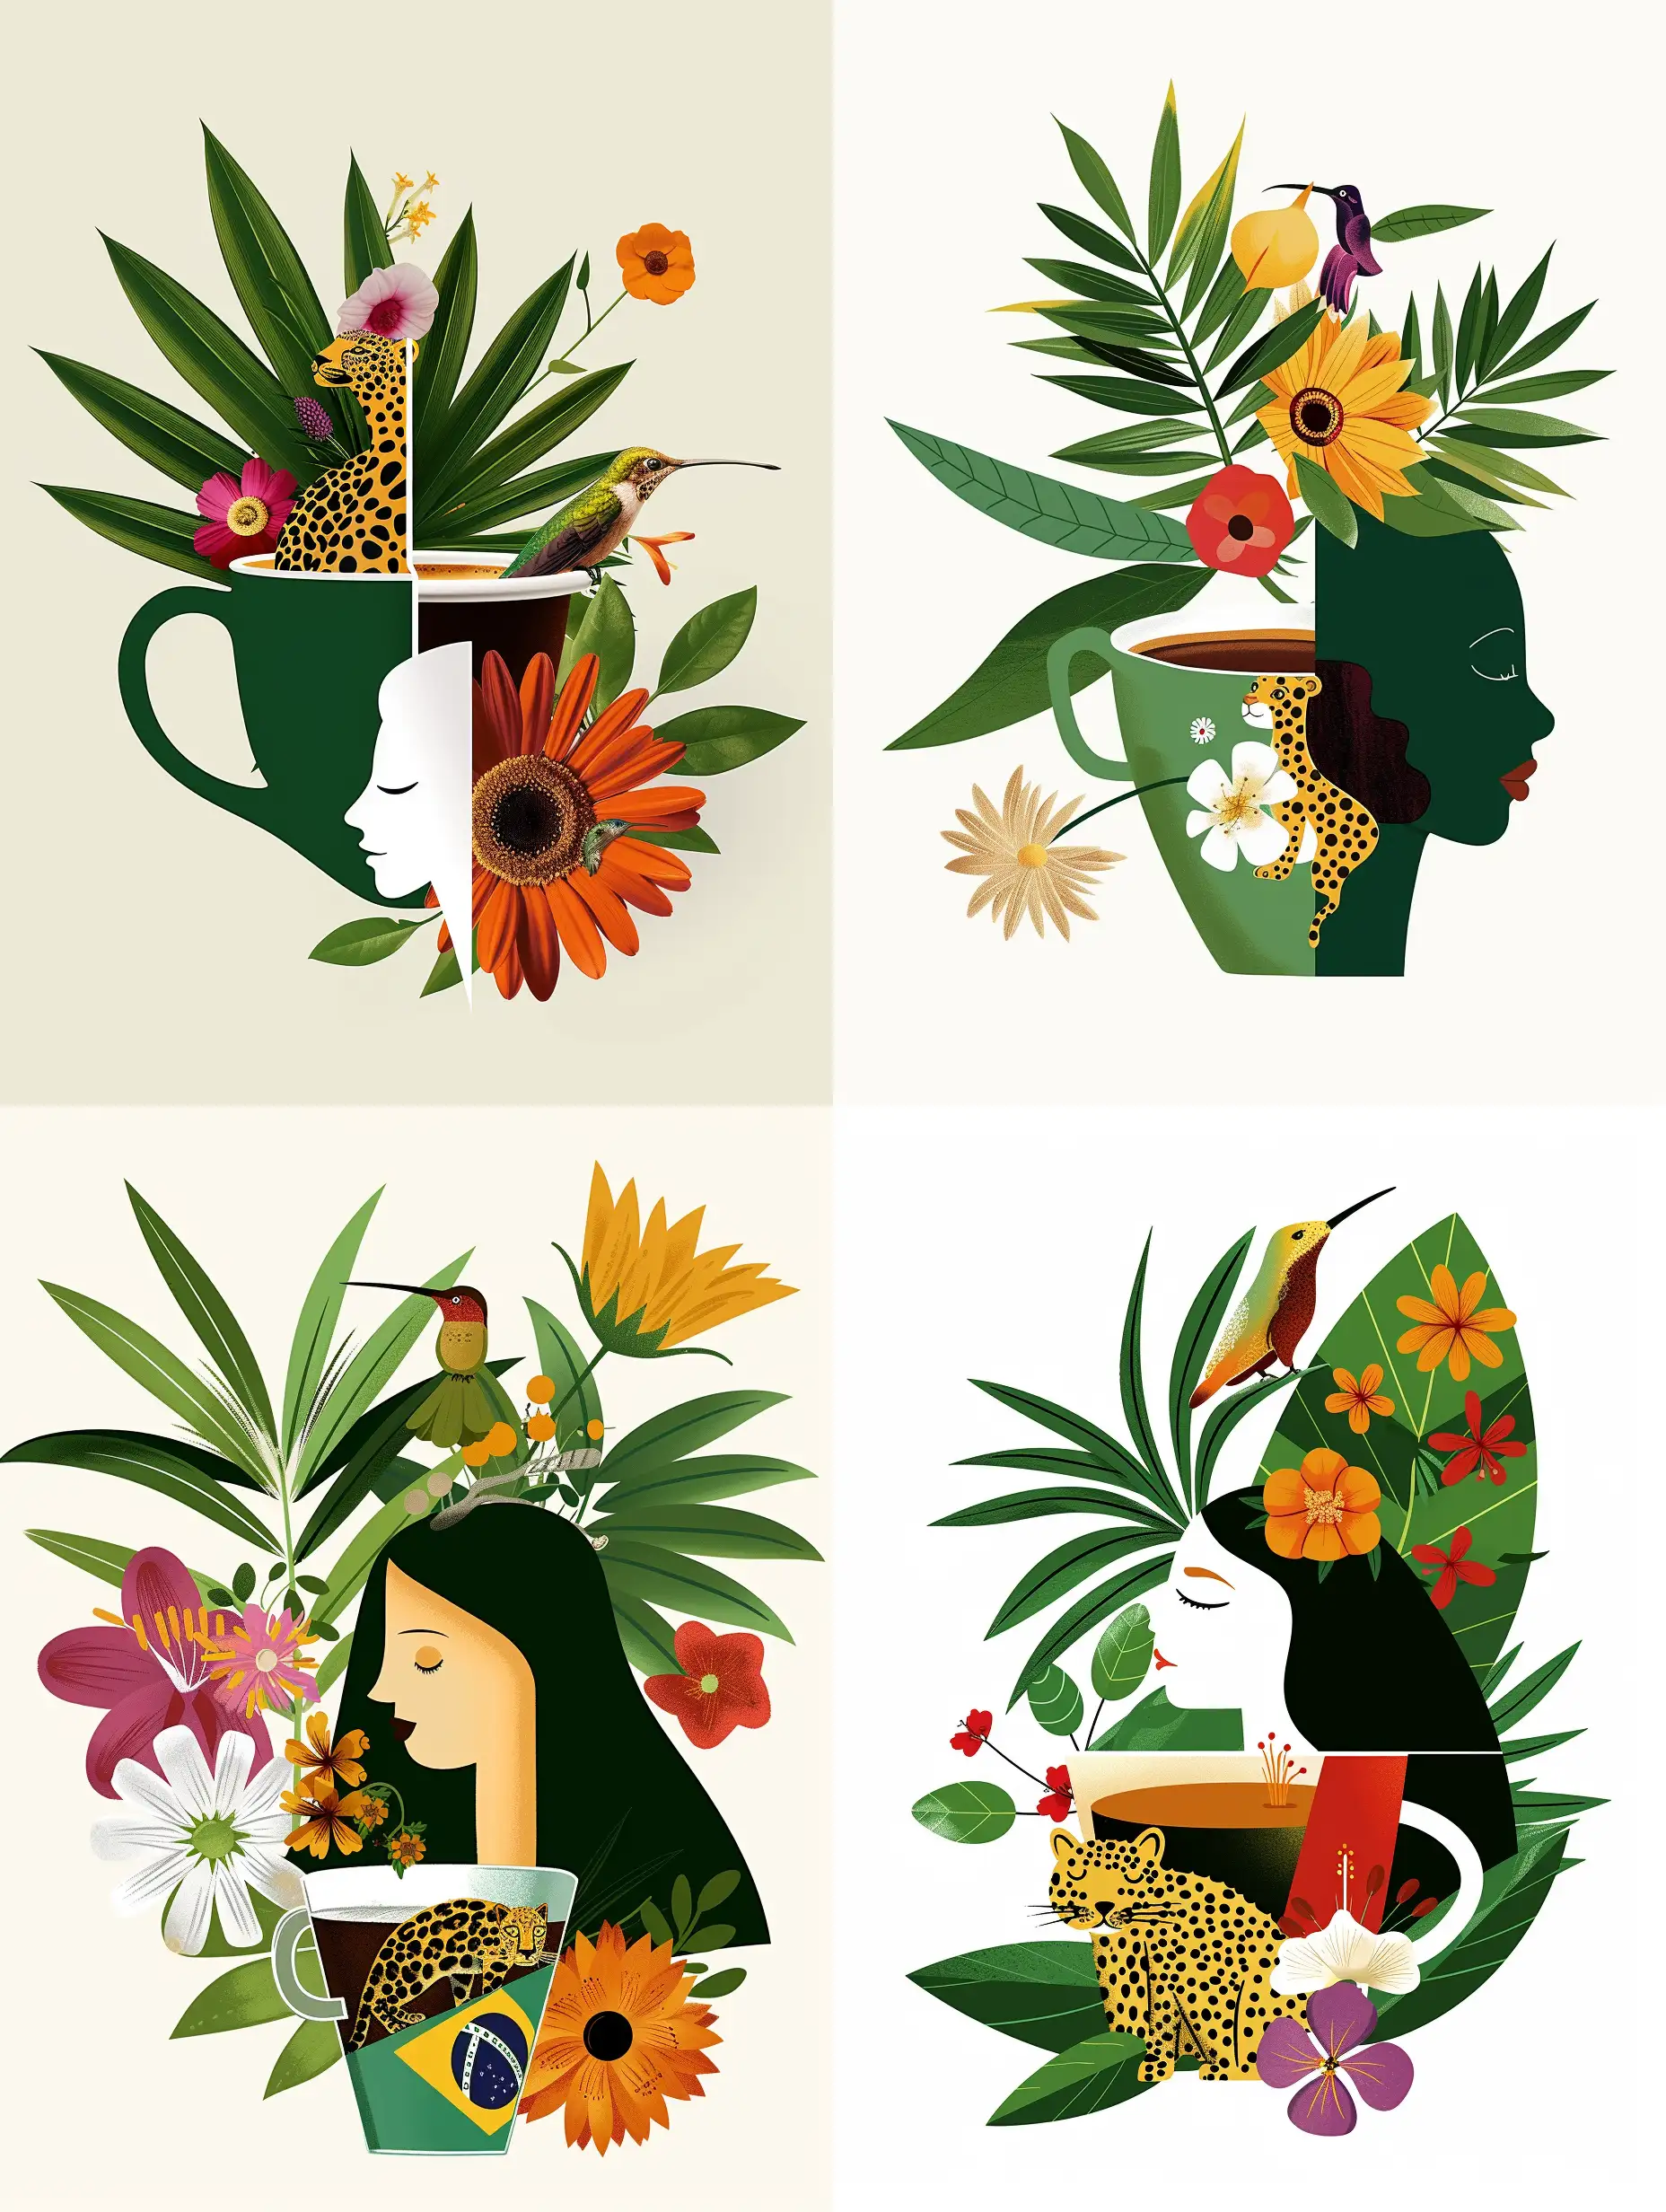 Иллюстрация кофе в чашке, девушка из Бразилии , леопард, Колибри, листья пальмы, кофе, цветы бразилии на белом фоне- serf https://cdn.dribbble.com/users/4558942/screenshots/17325164/media/78859b6ffc9a5a7bcb95a120b0c50b0f.jpg?resize=1000x750&vertical=center